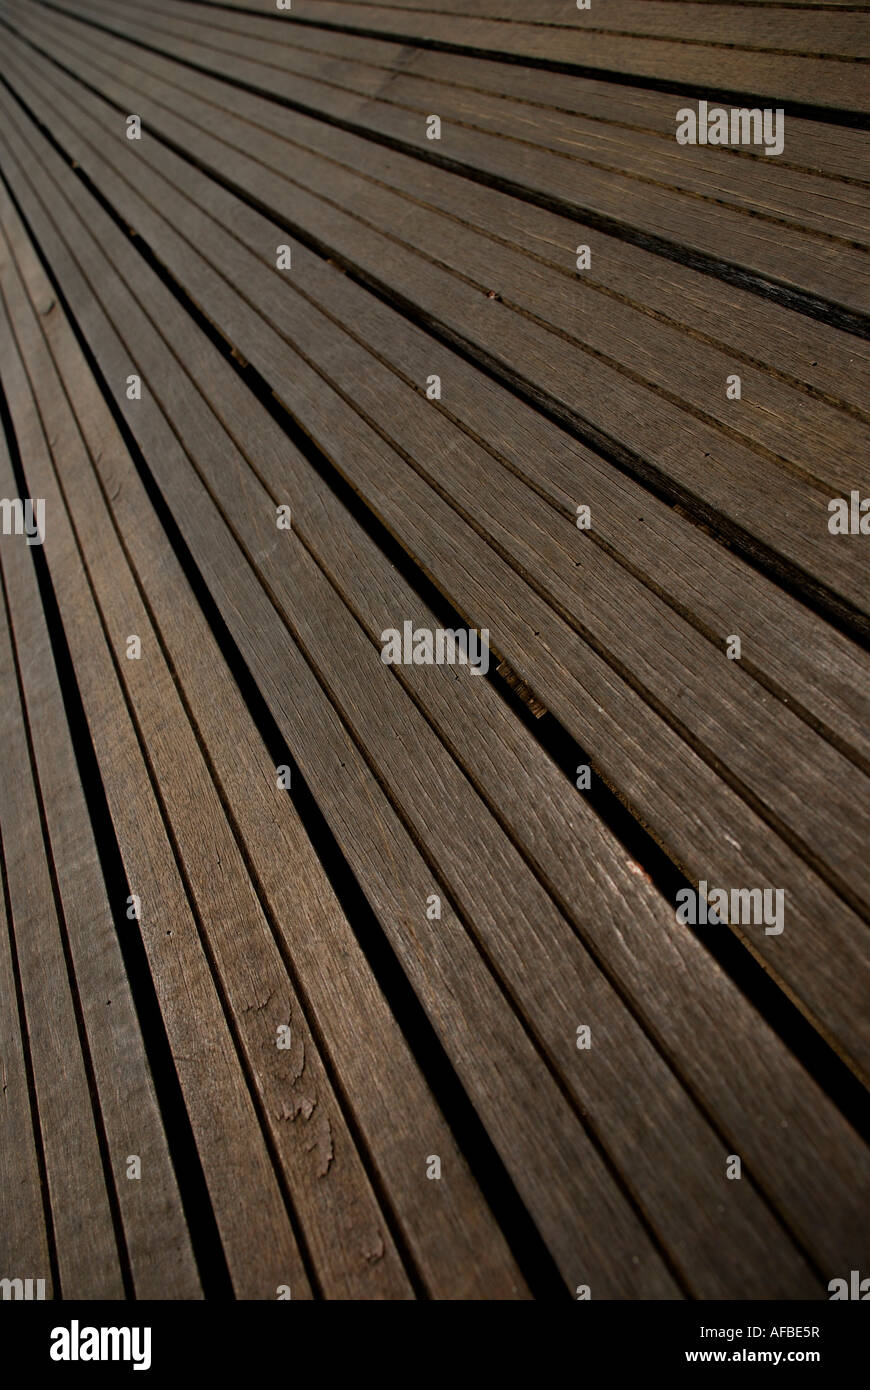 Wooden Floor boards Stock Photo